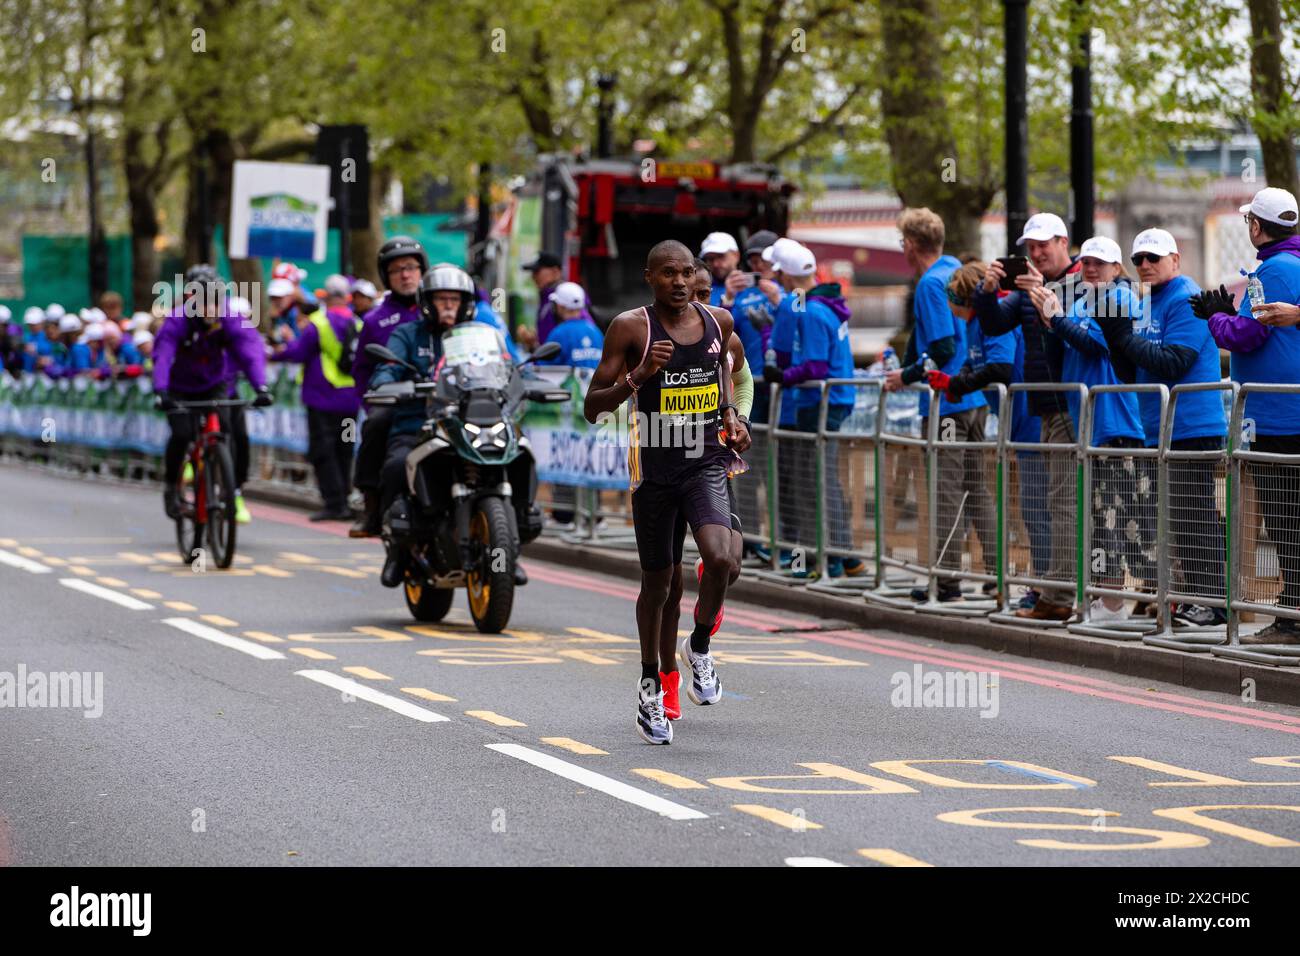 Londres, Royaume-Uni. 21 avril 2024. Alexander Mutiso Munyao du Kenya en route pour gagner la course masculine au marathon de Londres, dimanche 21 avril, 24 Mile marker crédit : vue Studios/Alamy Live News Banque D'Images